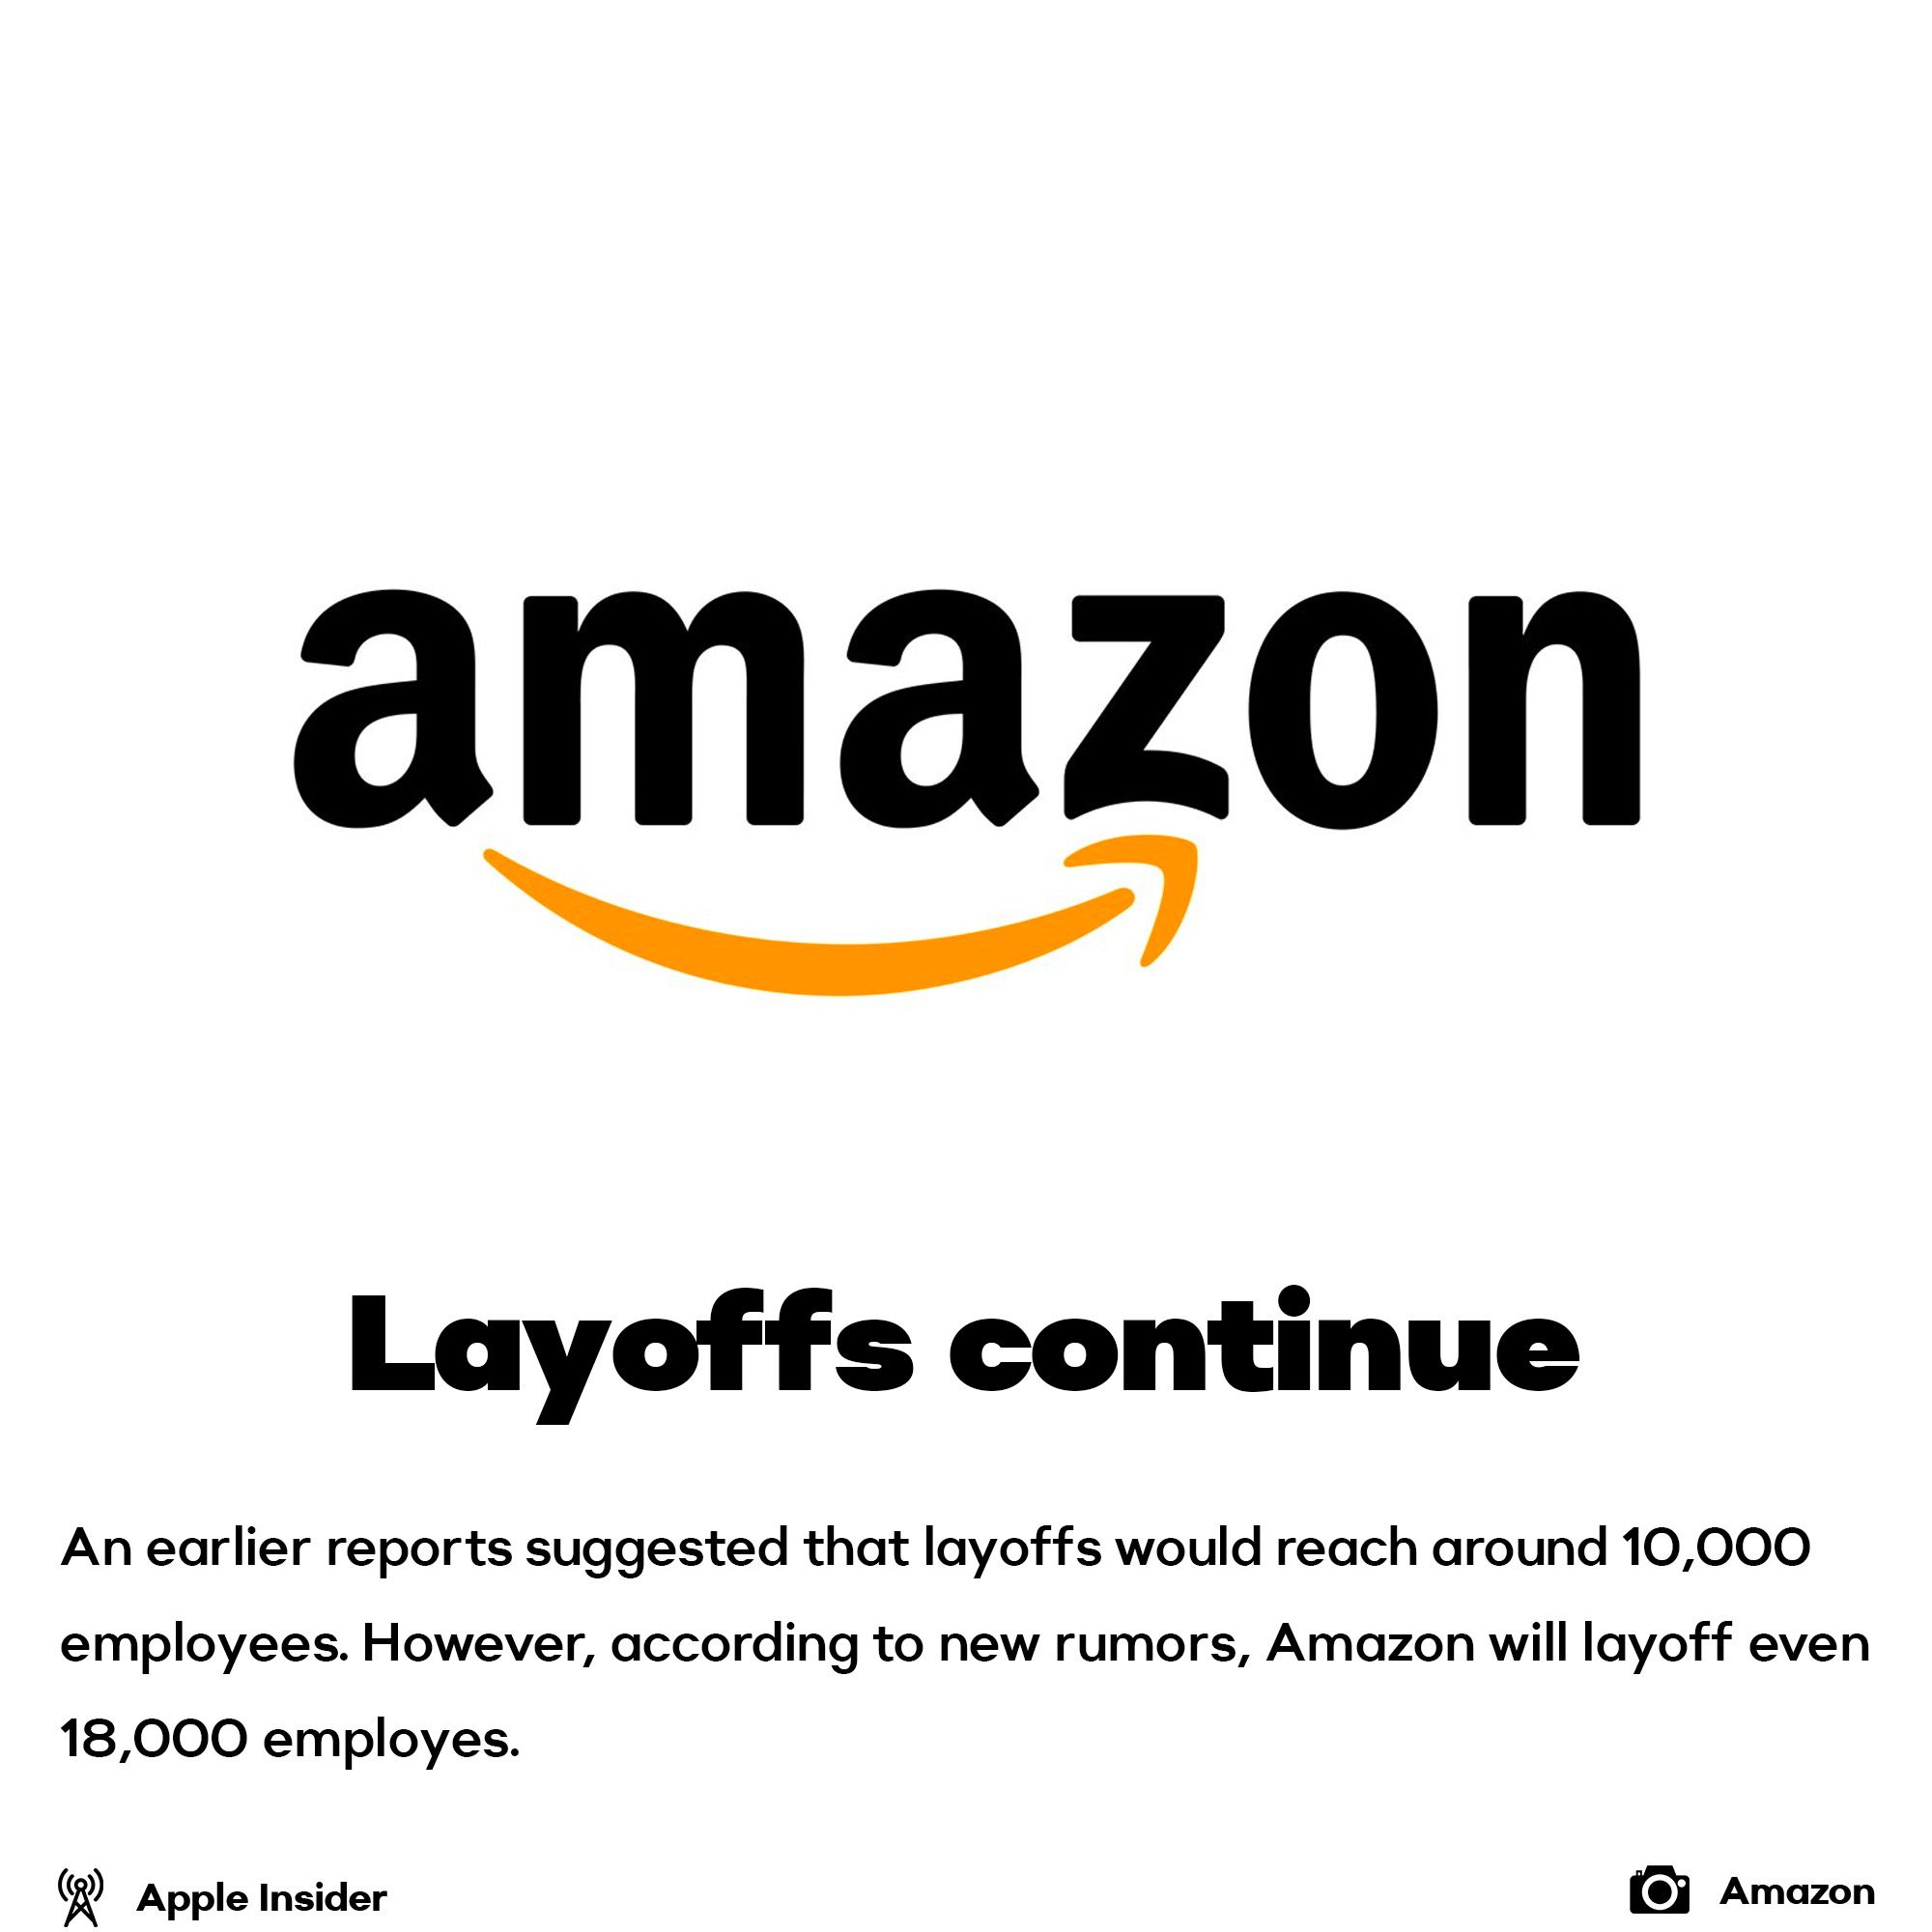 Amazon layoffs continue